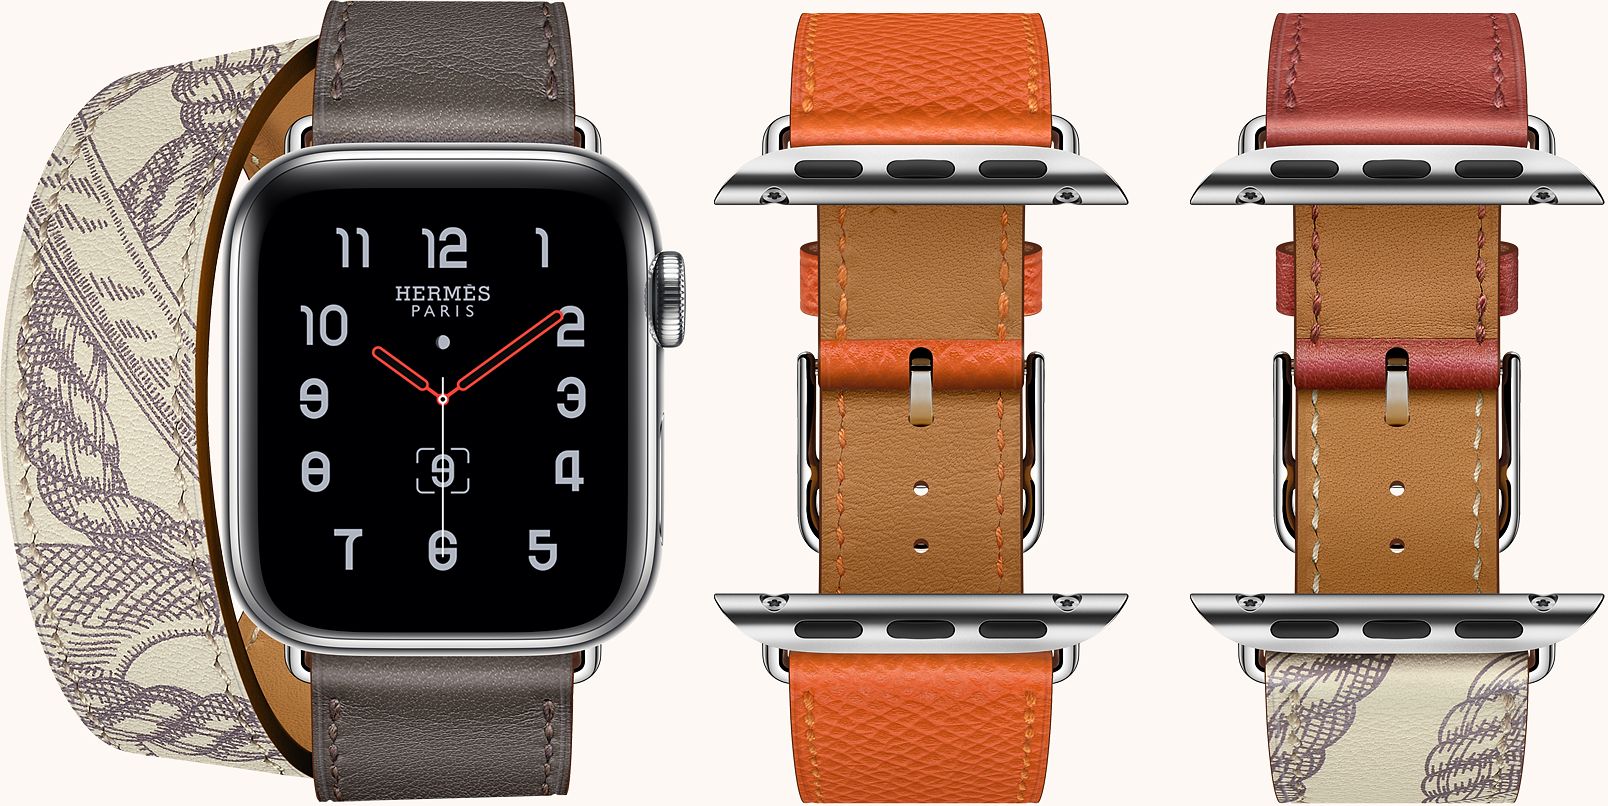 รวมรุ่นและราคา Apple Watch Series 5 ในประเทศไทย วางจำหน่าย 25 ตุลาคมนี้